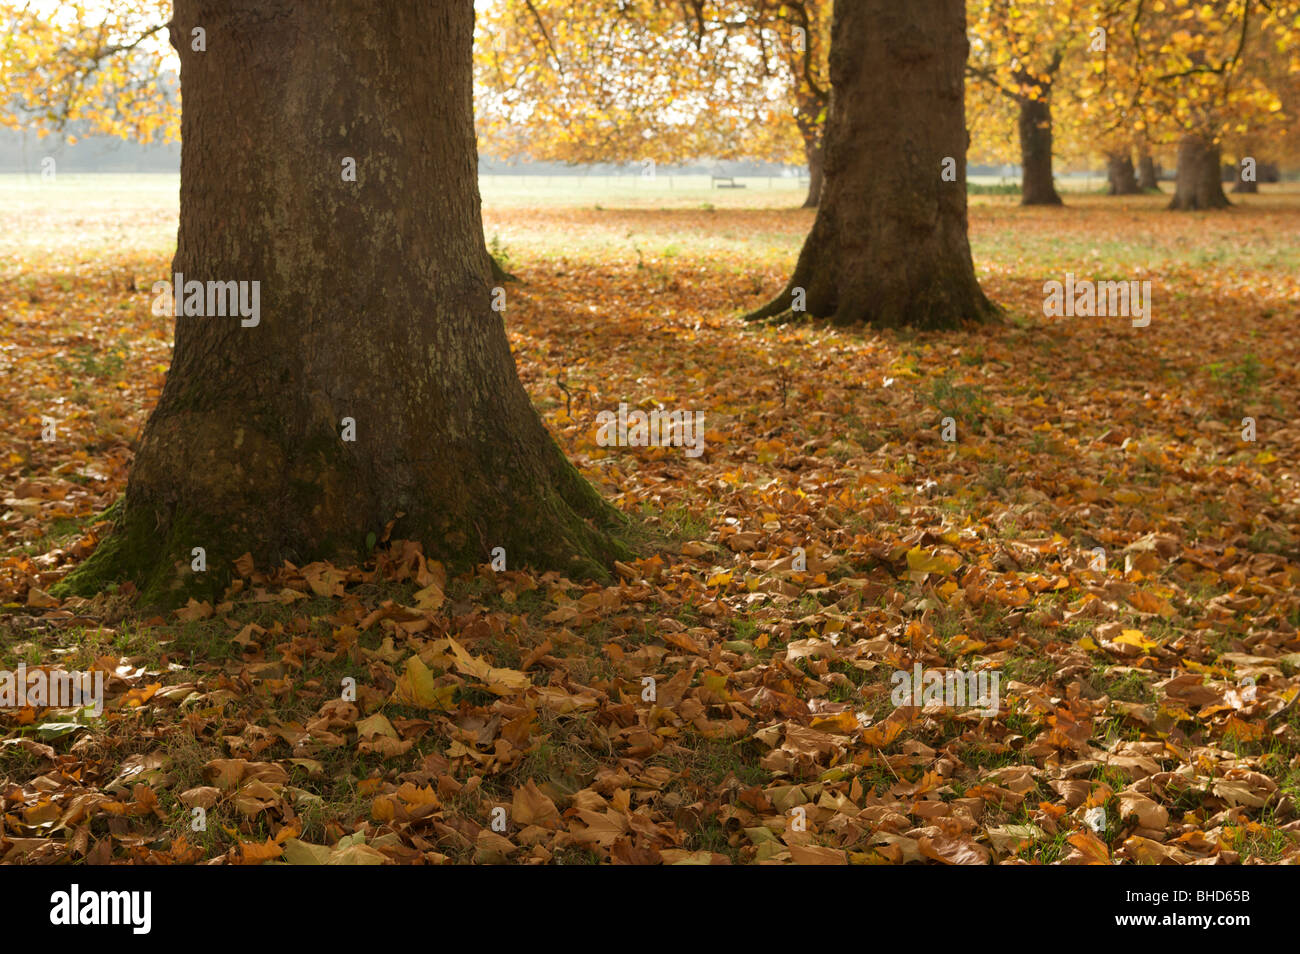 Avenue, arbre, automne, Automne, chaud, jaune, orange, feuilles, écorce, Dream Banque D'Images